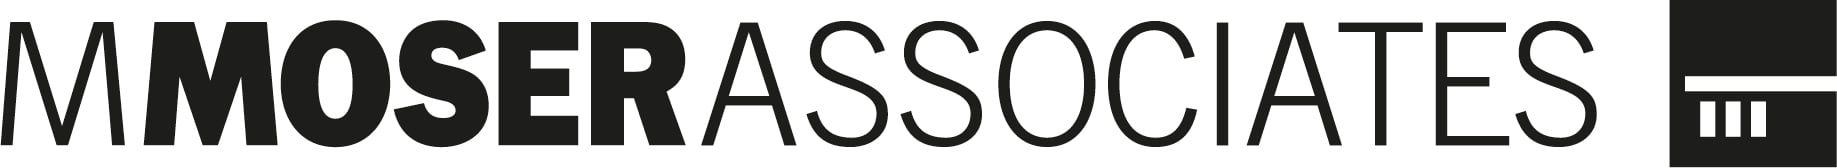 MMOSER logo